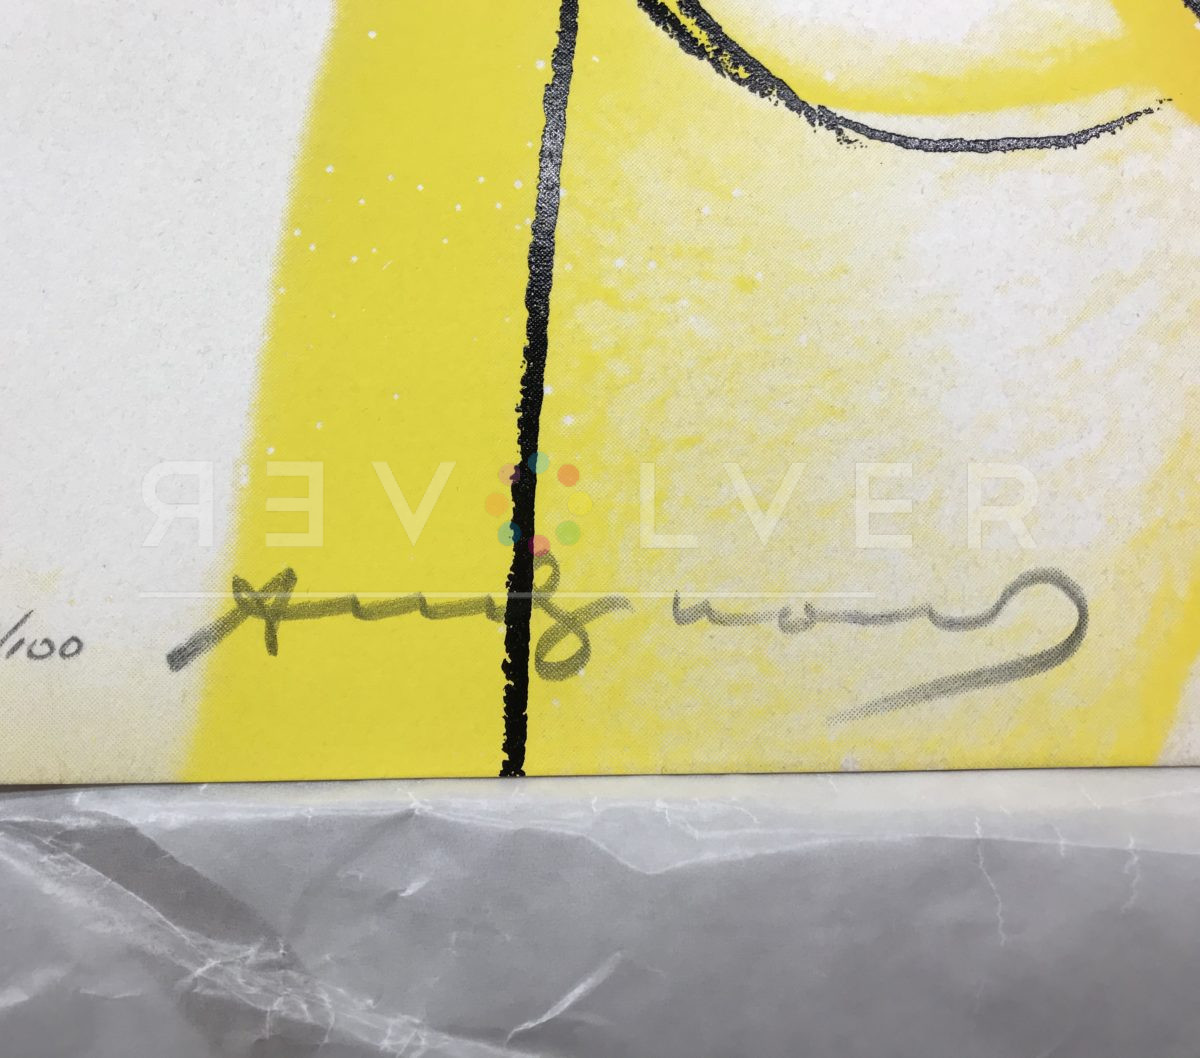 Warhols signature on Love 311